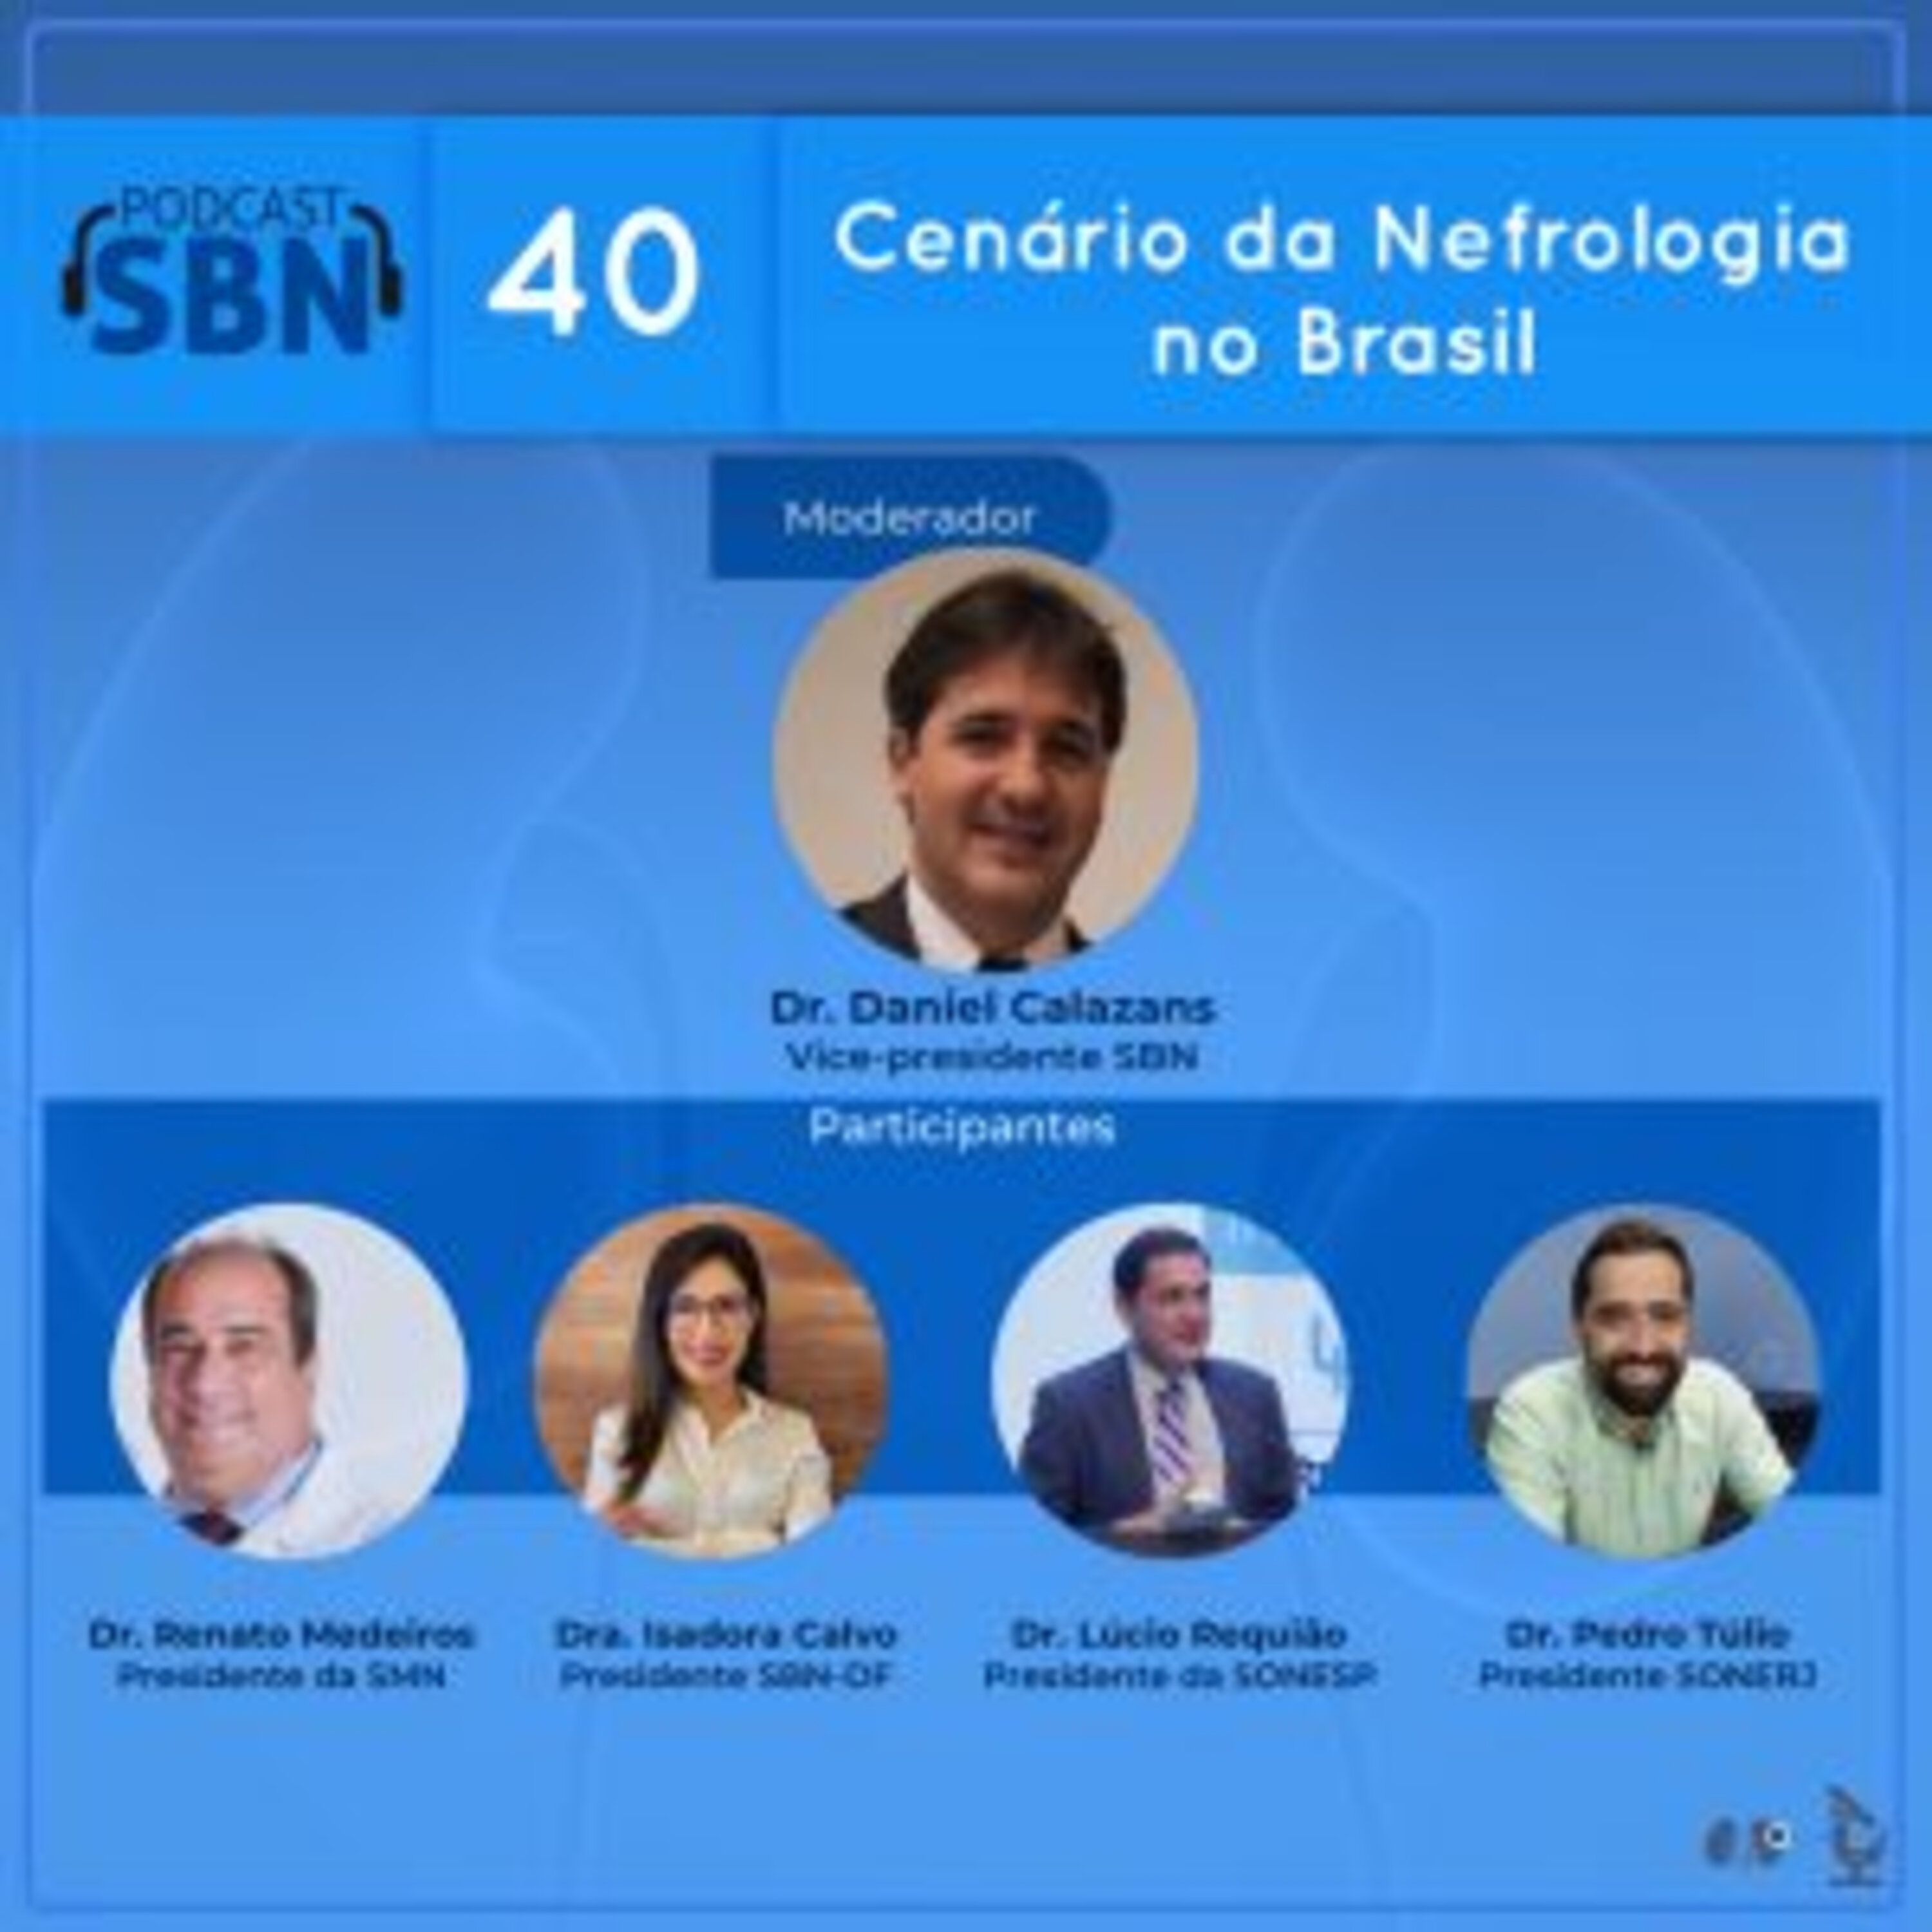 Cenário da Nefrologia no Brasil (SBN #40)